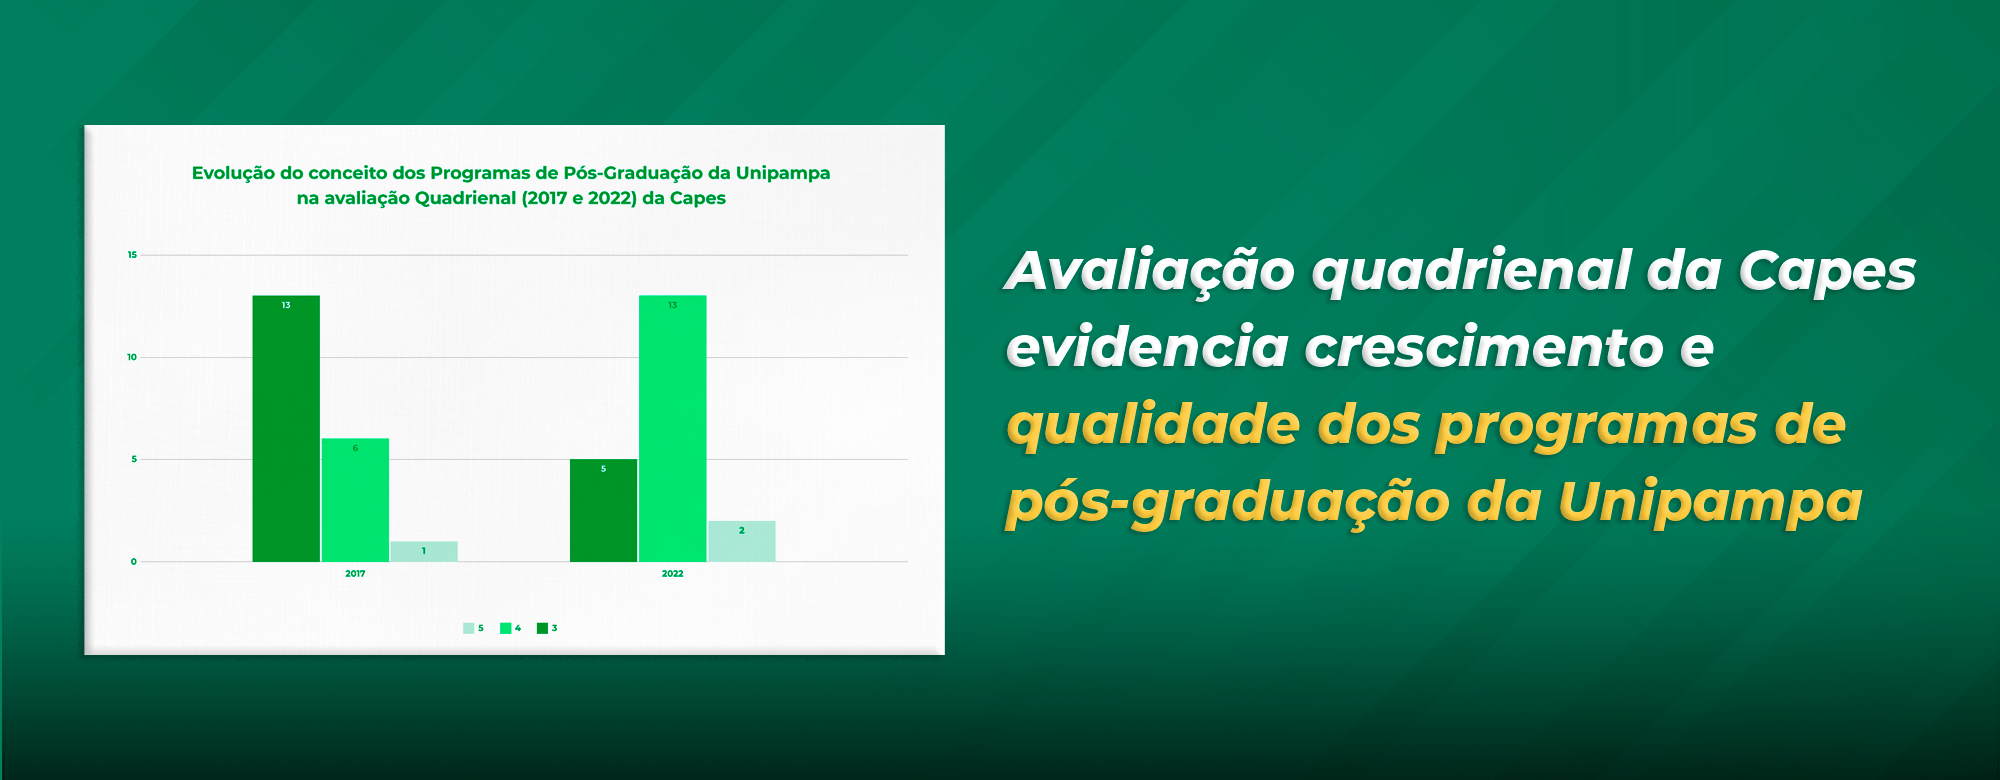 Avaliação quadrienal da Capes evidencia crescimento e qualidade dos programas de pós-graduação da Unipampa